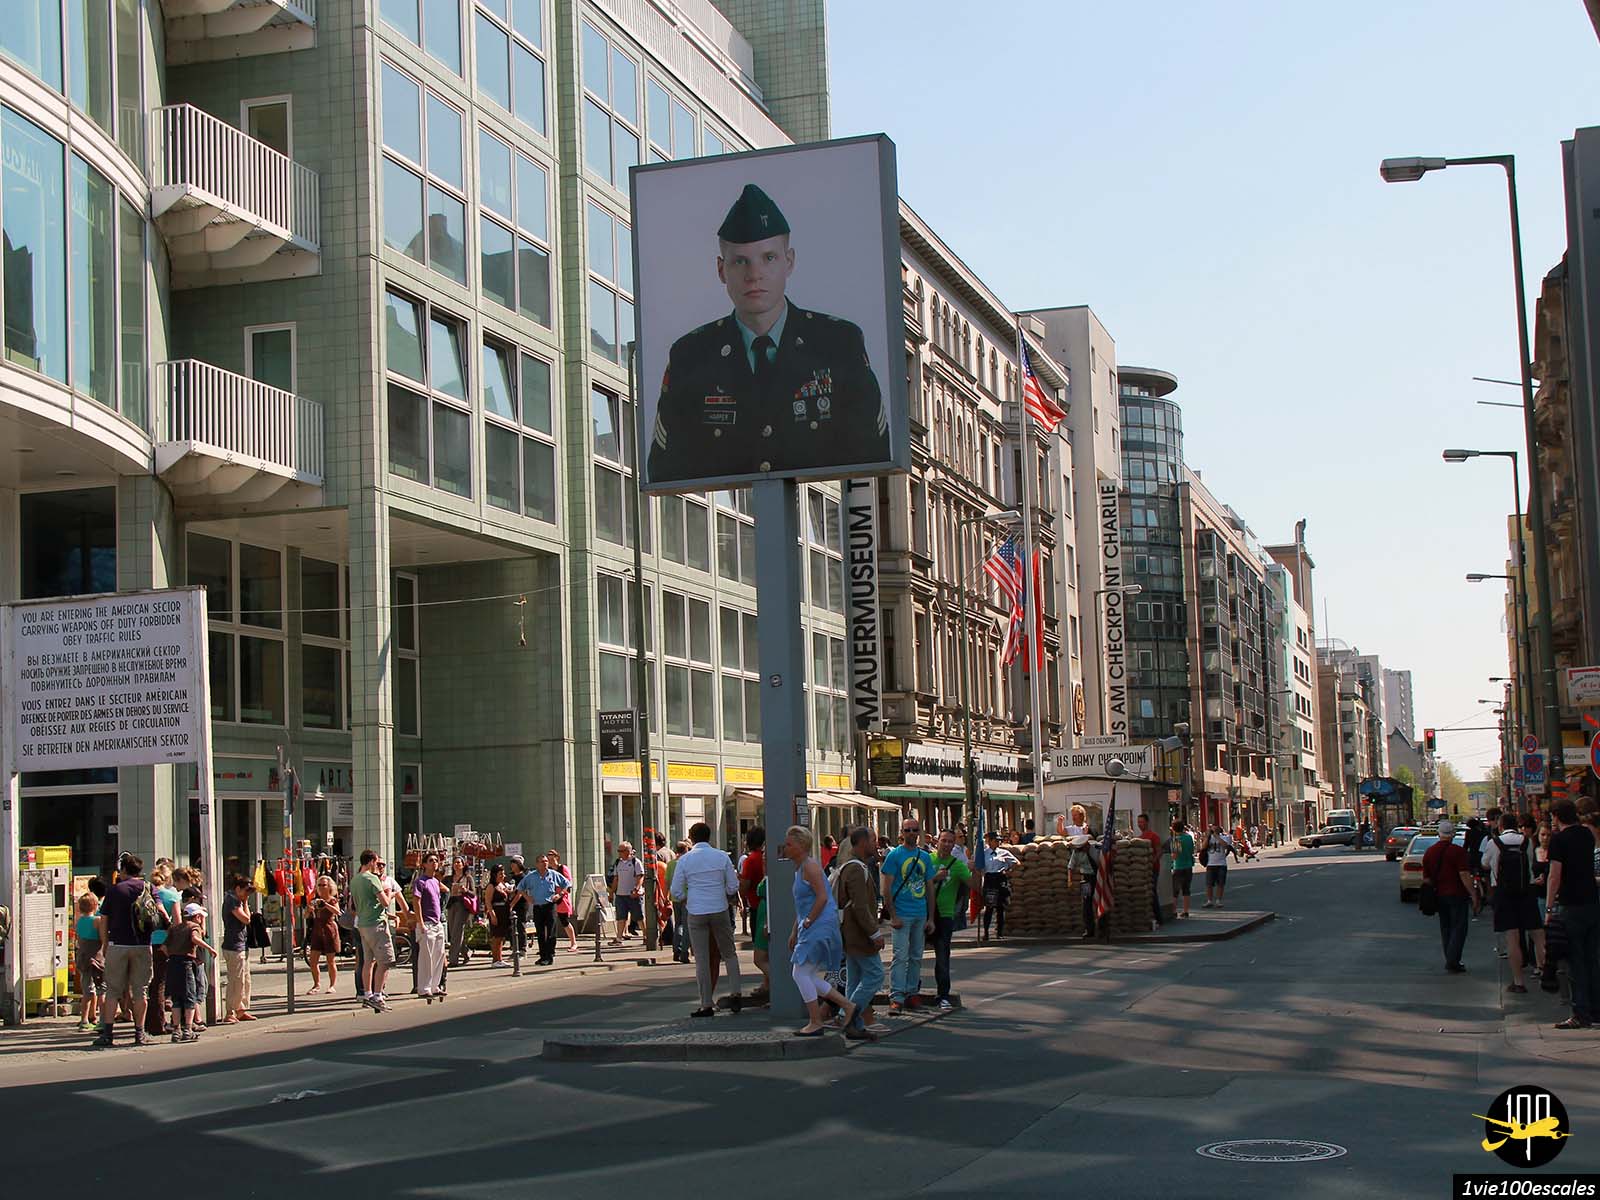 Une installation photographique à l'ancien poste frontière avec des portraits plus grands que nature d'un soldat américain (Jeff Harper)